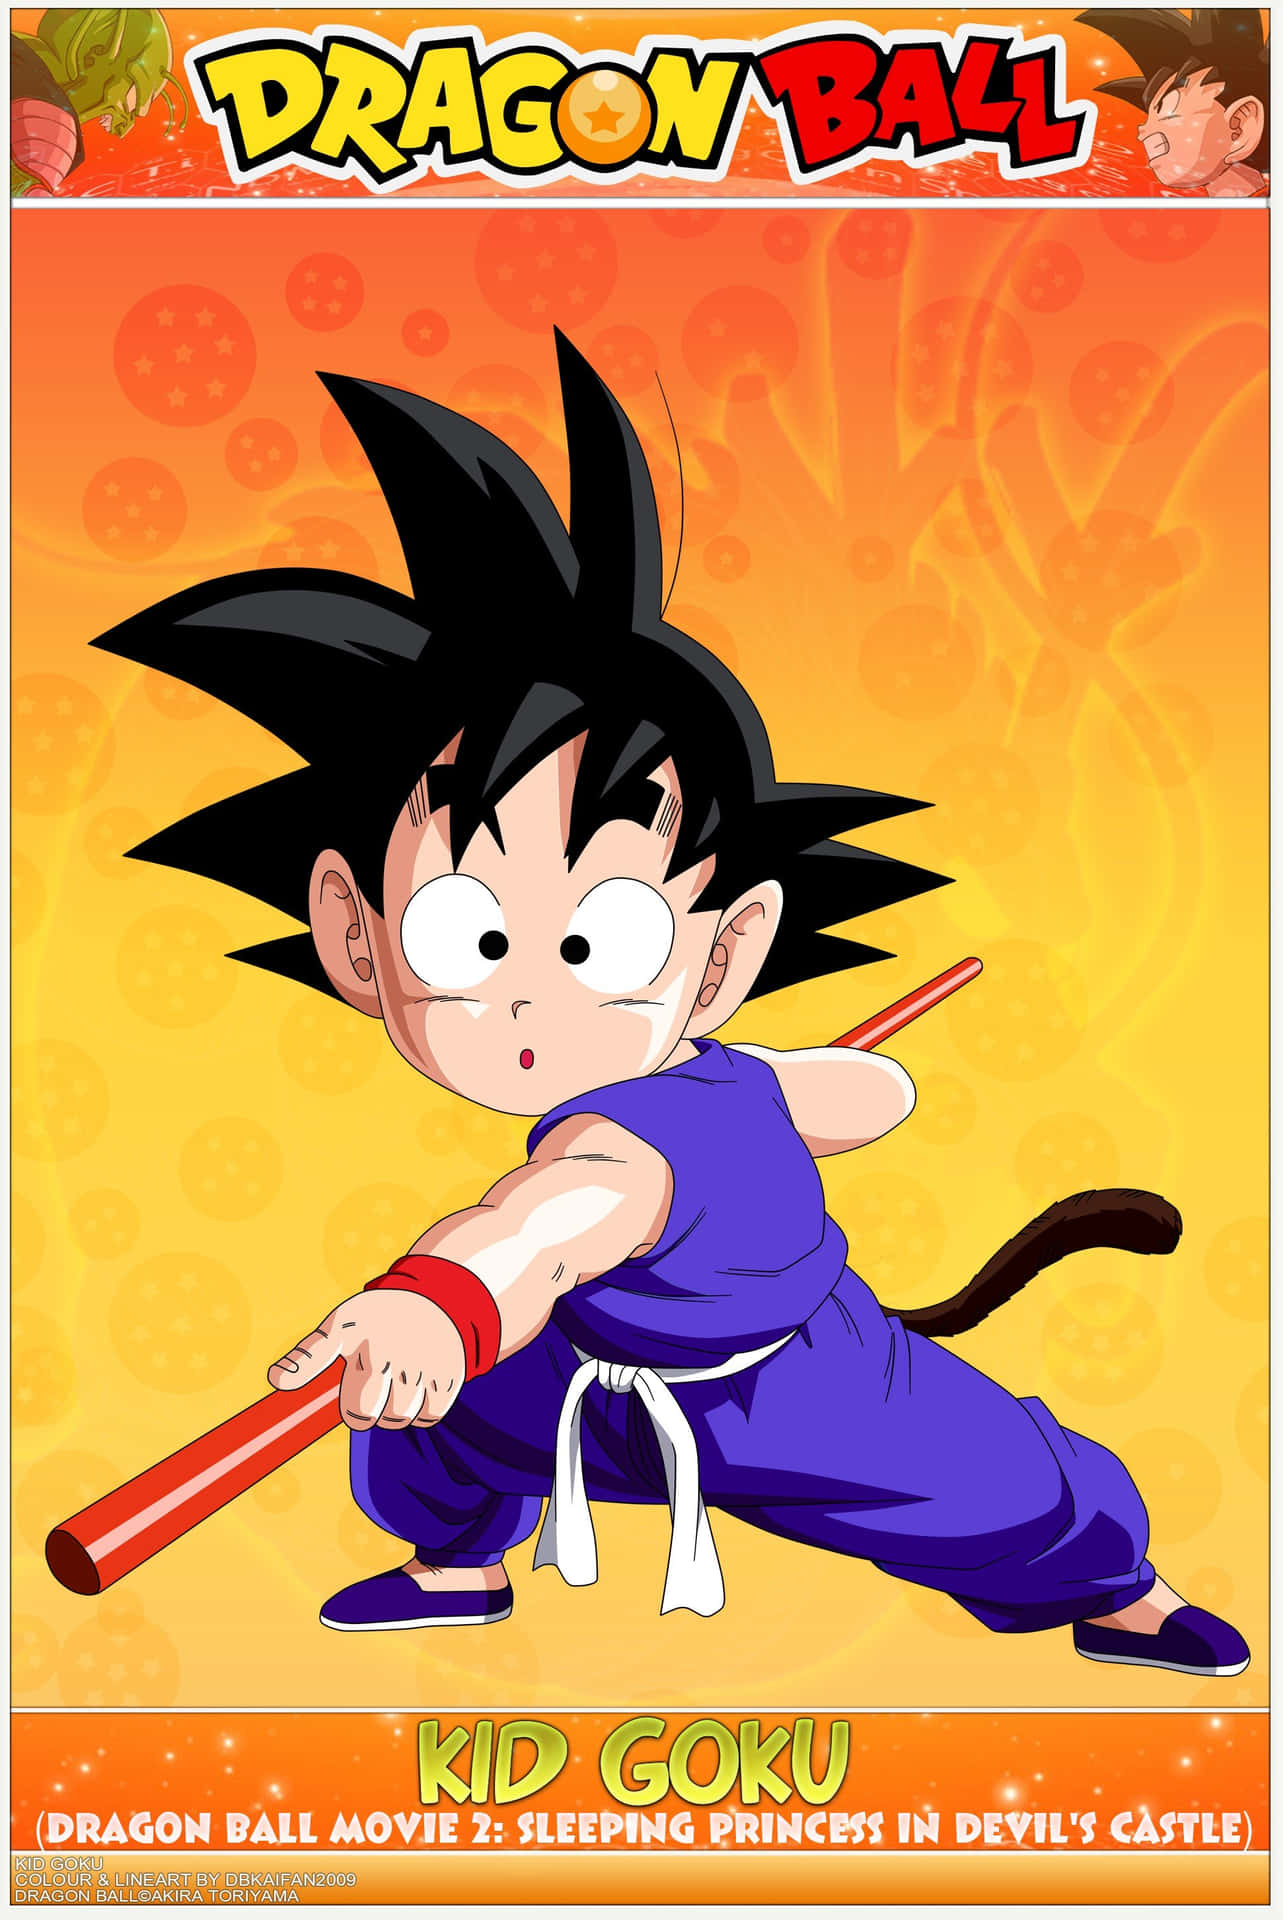 Kid Goku Dragon Ball Poster Wallpaper